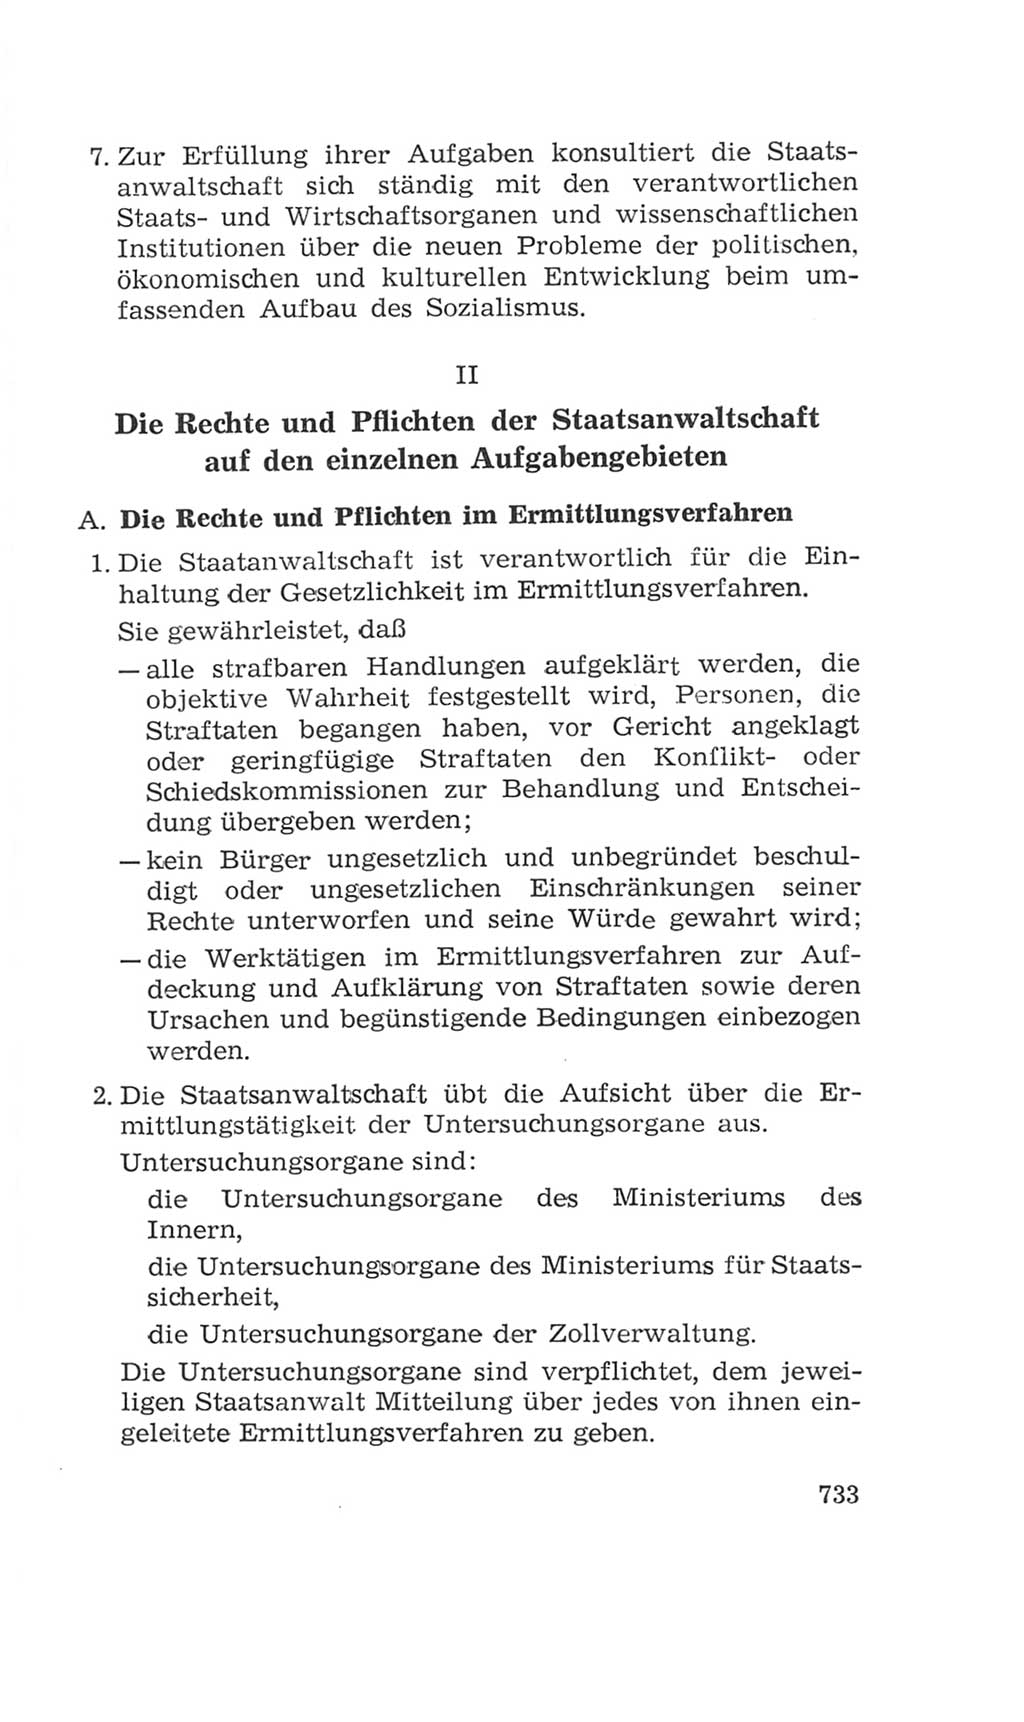 Volkskammer (VK) der Deutschen Demokratischen Republik (DDR), 4. Wahlperiode 1963-1967, Seite 733 (VK. DDR 4. WP. 1963-1967, S. 733)